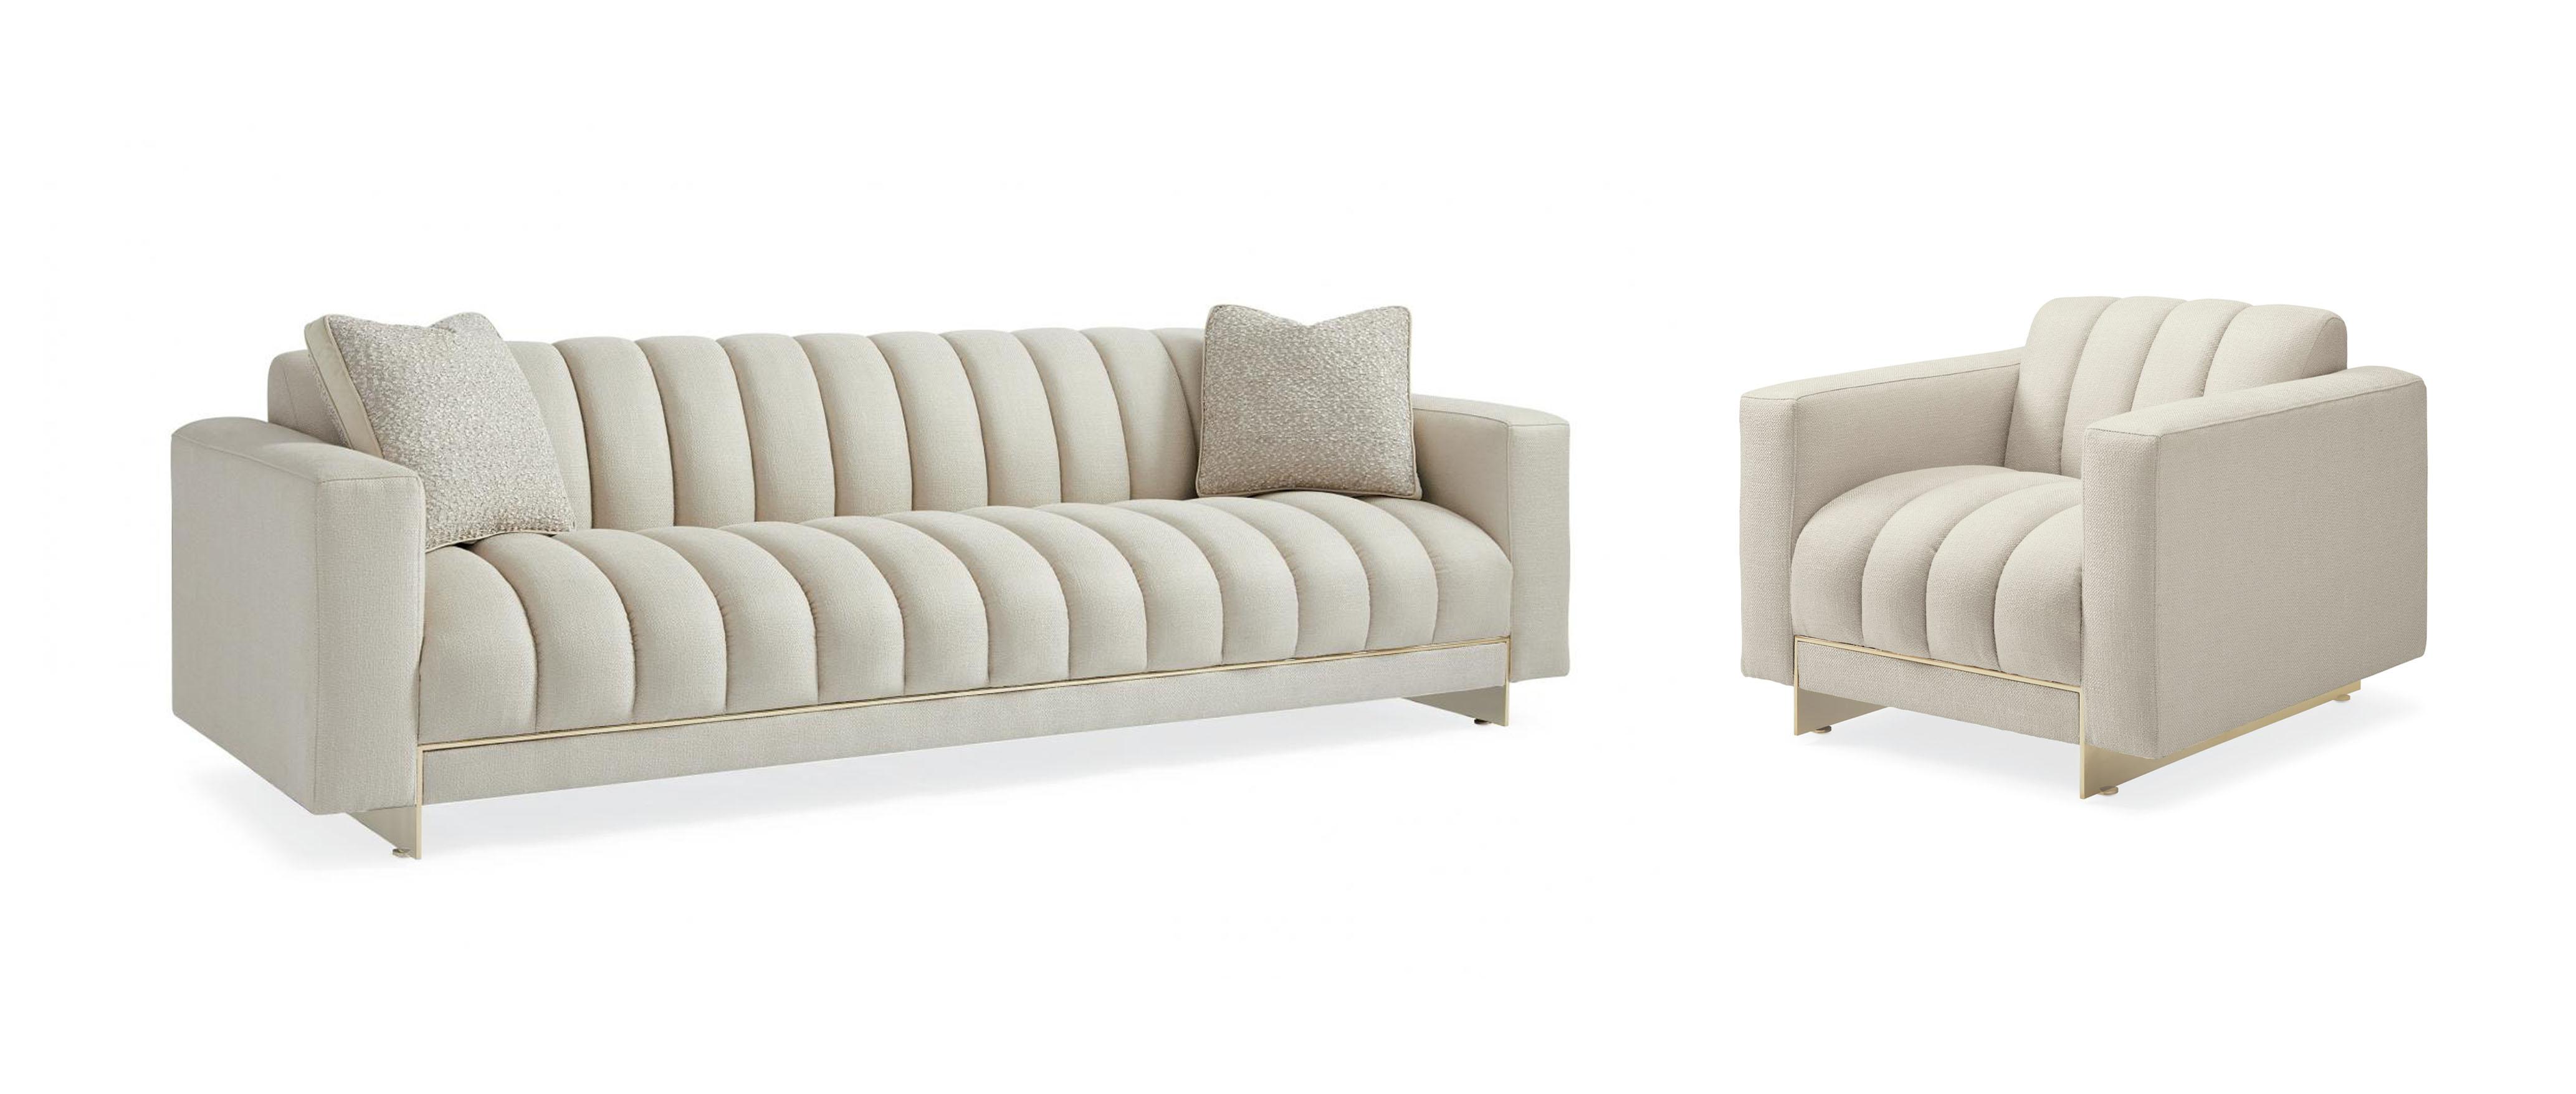 Contemporary Sofa Set THE WELL-BALANCED SOFA / THE WELL BALANCED CHAIR SGU-017-211-A SGU-017-231-A in Cream Fabric